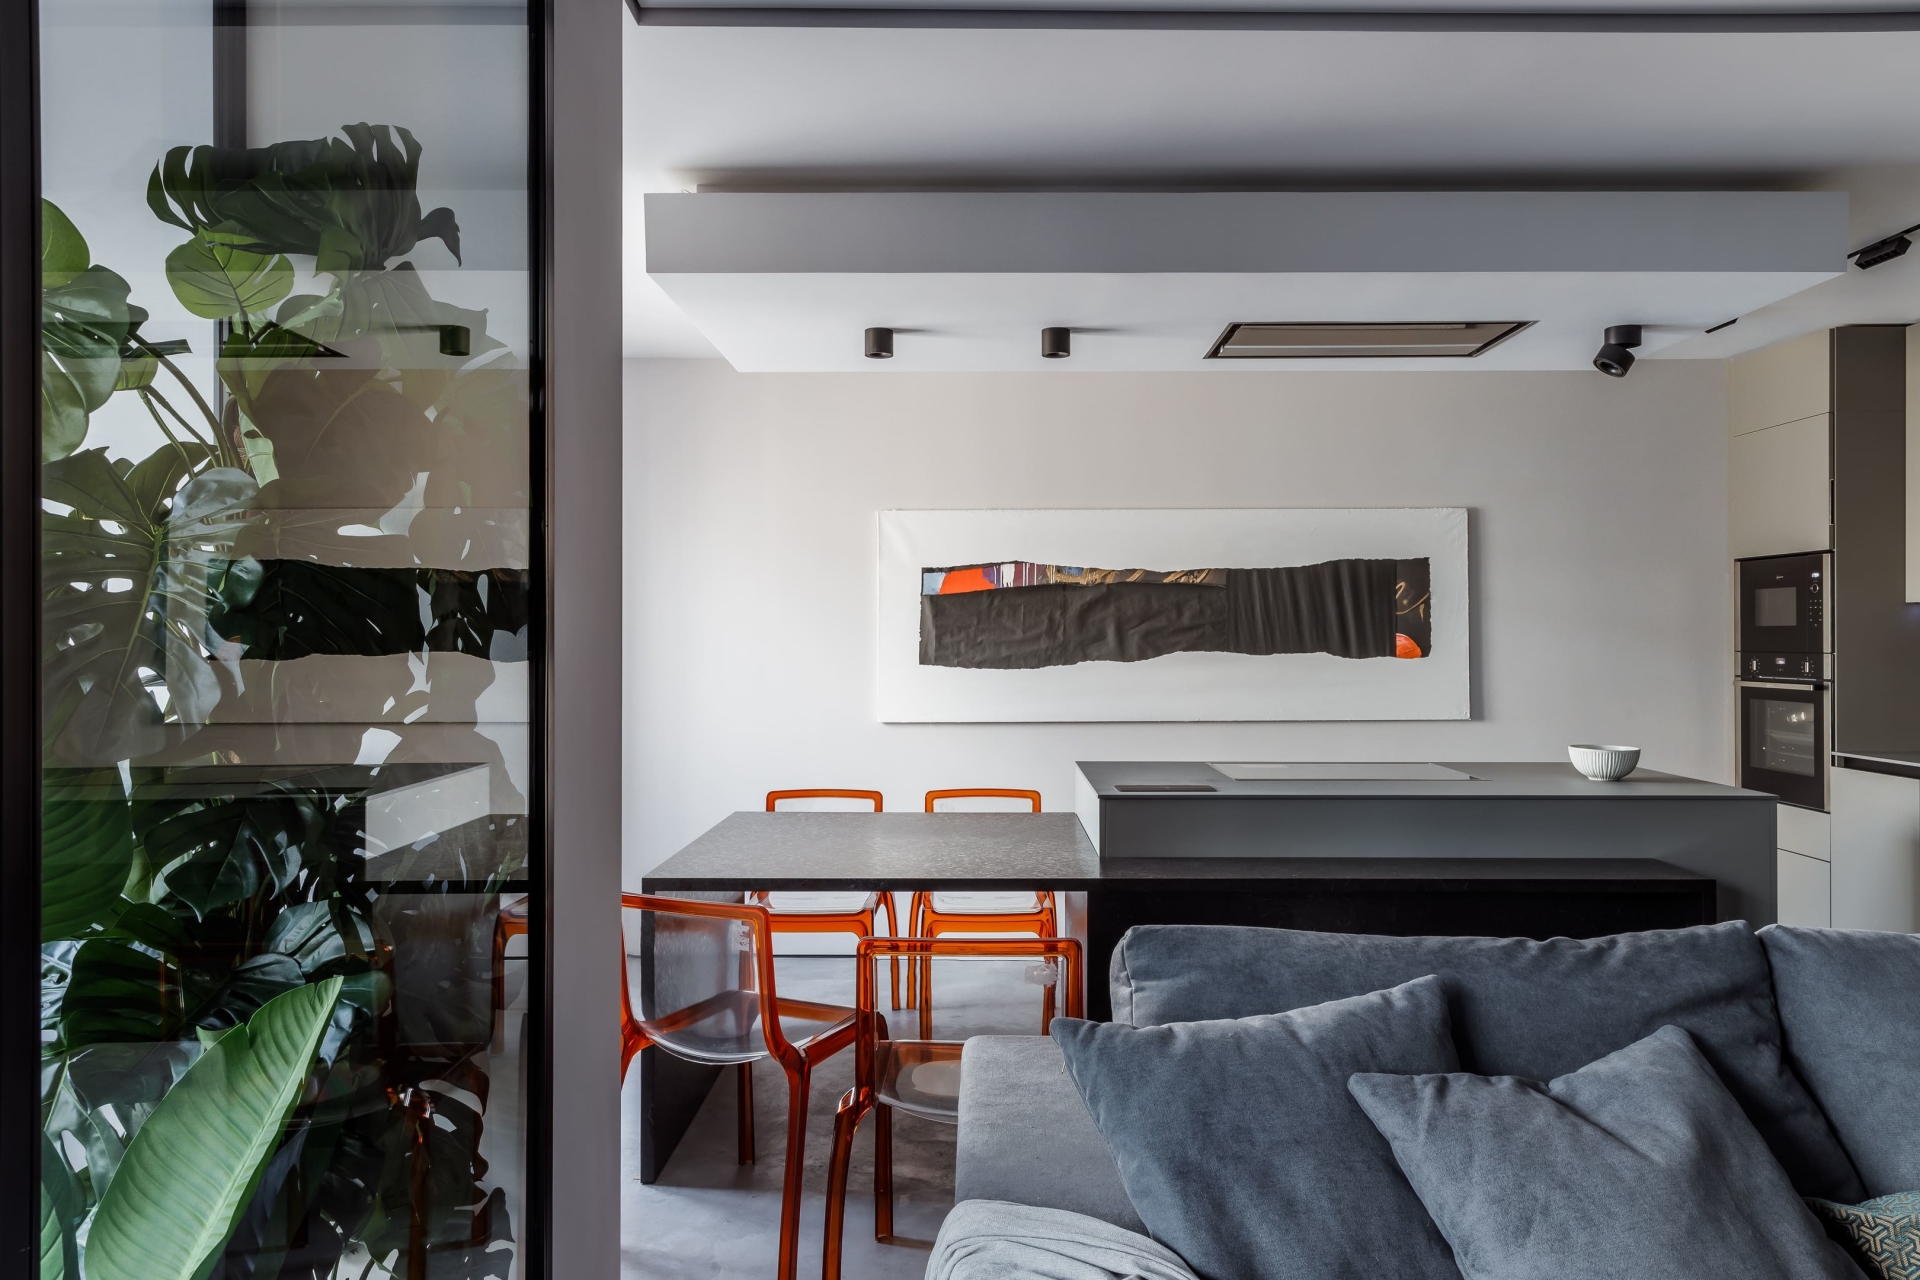 Căn hộ diện tích 89m² được NTK Anastasia Chernyavskaya lựa chọn giải pháp thiết kế mở để tạo cảm giác thông thoáng. Tone màu chủ đạo là trắng - xám thanh lịch. Từ góc chụp này, chúng ta sẽ thấy được phòng khách, phòng ăn và phòng bếp. 